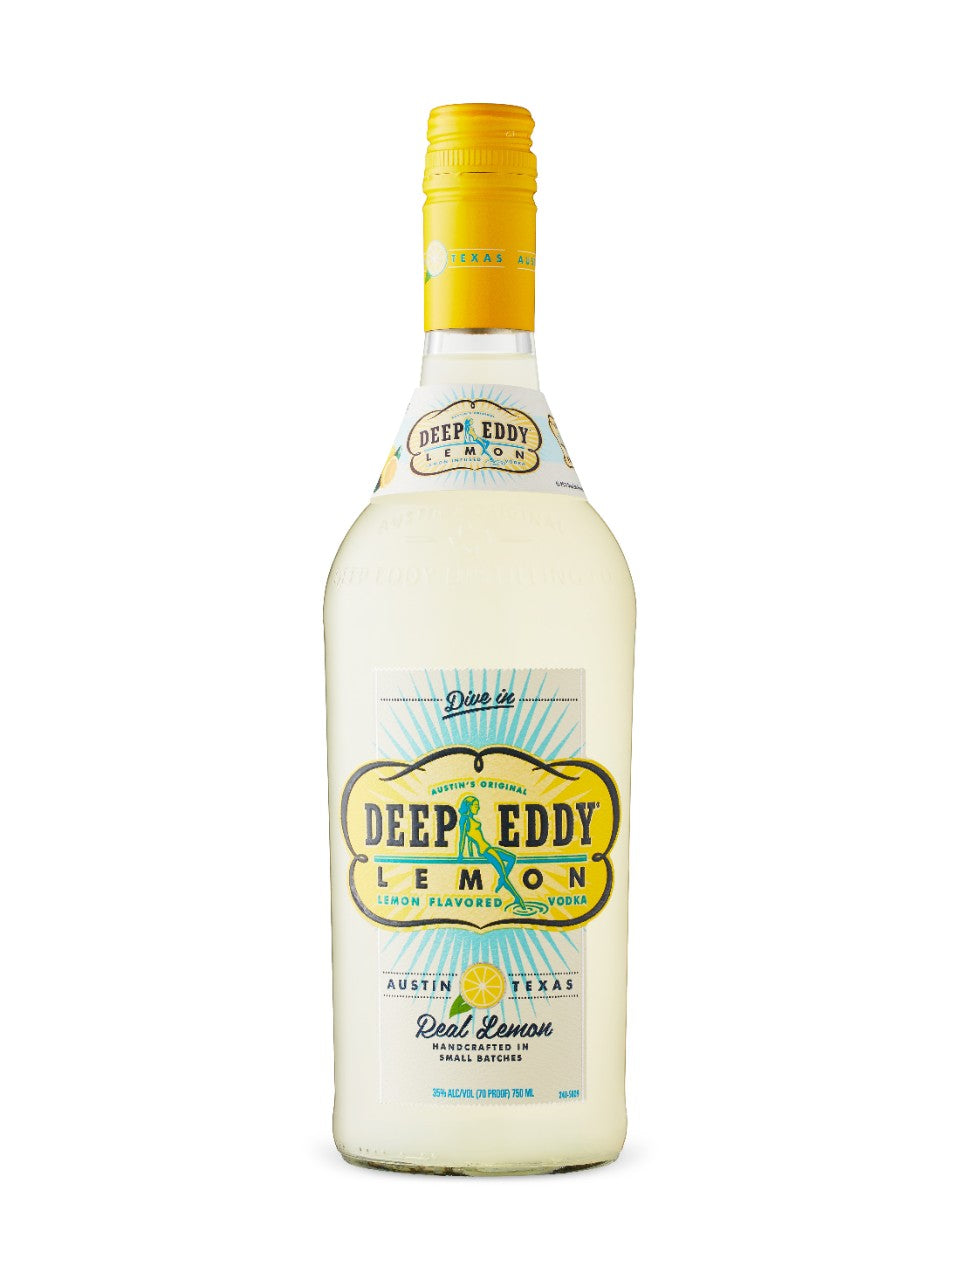 Deep Eddy Lemon 750 ml bottle